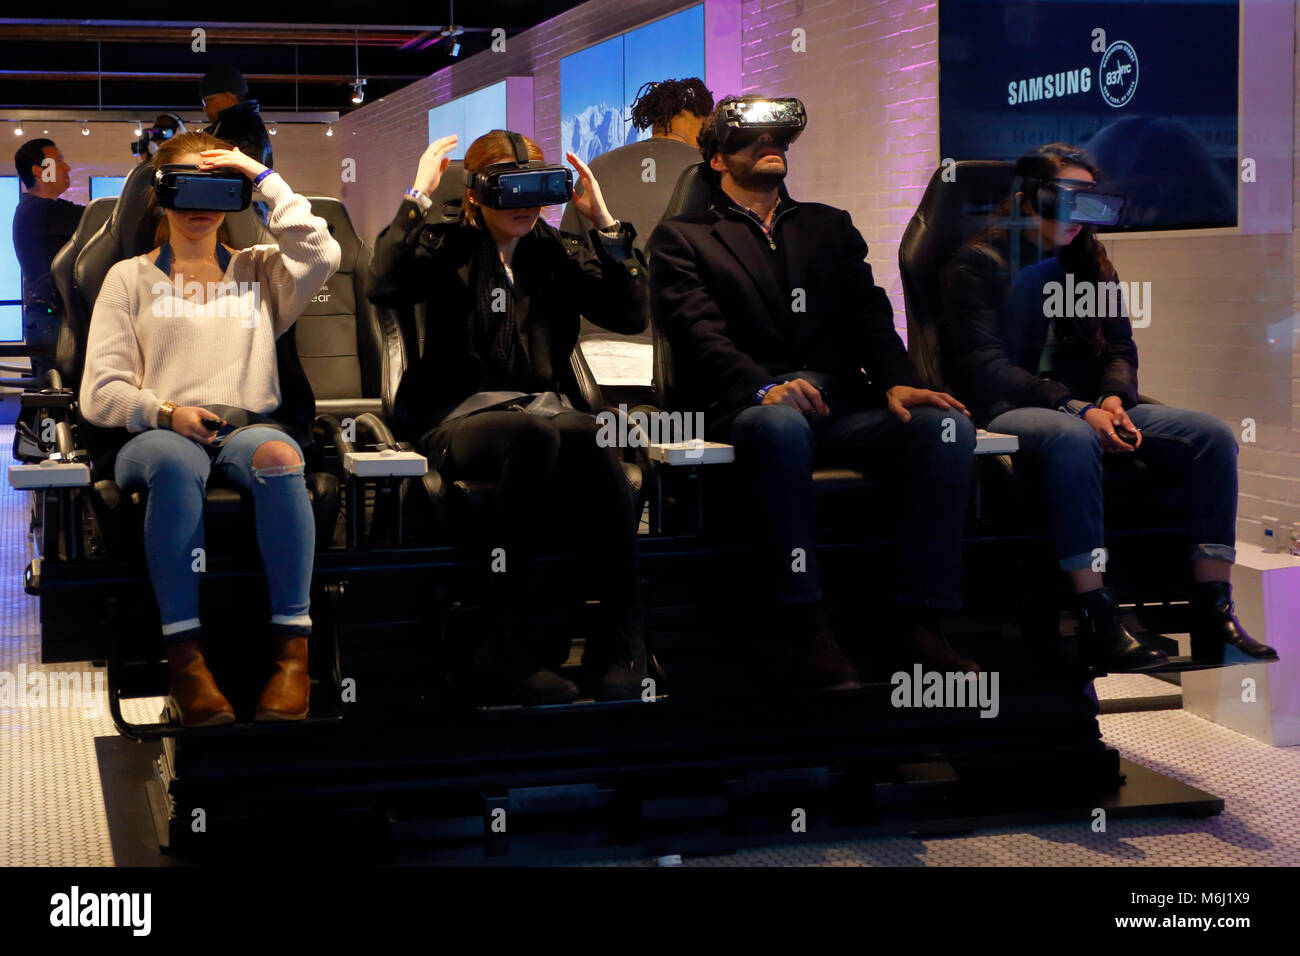 Persone che indossano occhiali per la realtà virtuale in un negozio di tecnologia; i visori per la realtà virtuale trasformano la visione di film in un'esperienza coinvolgente e personale. Foto Stock